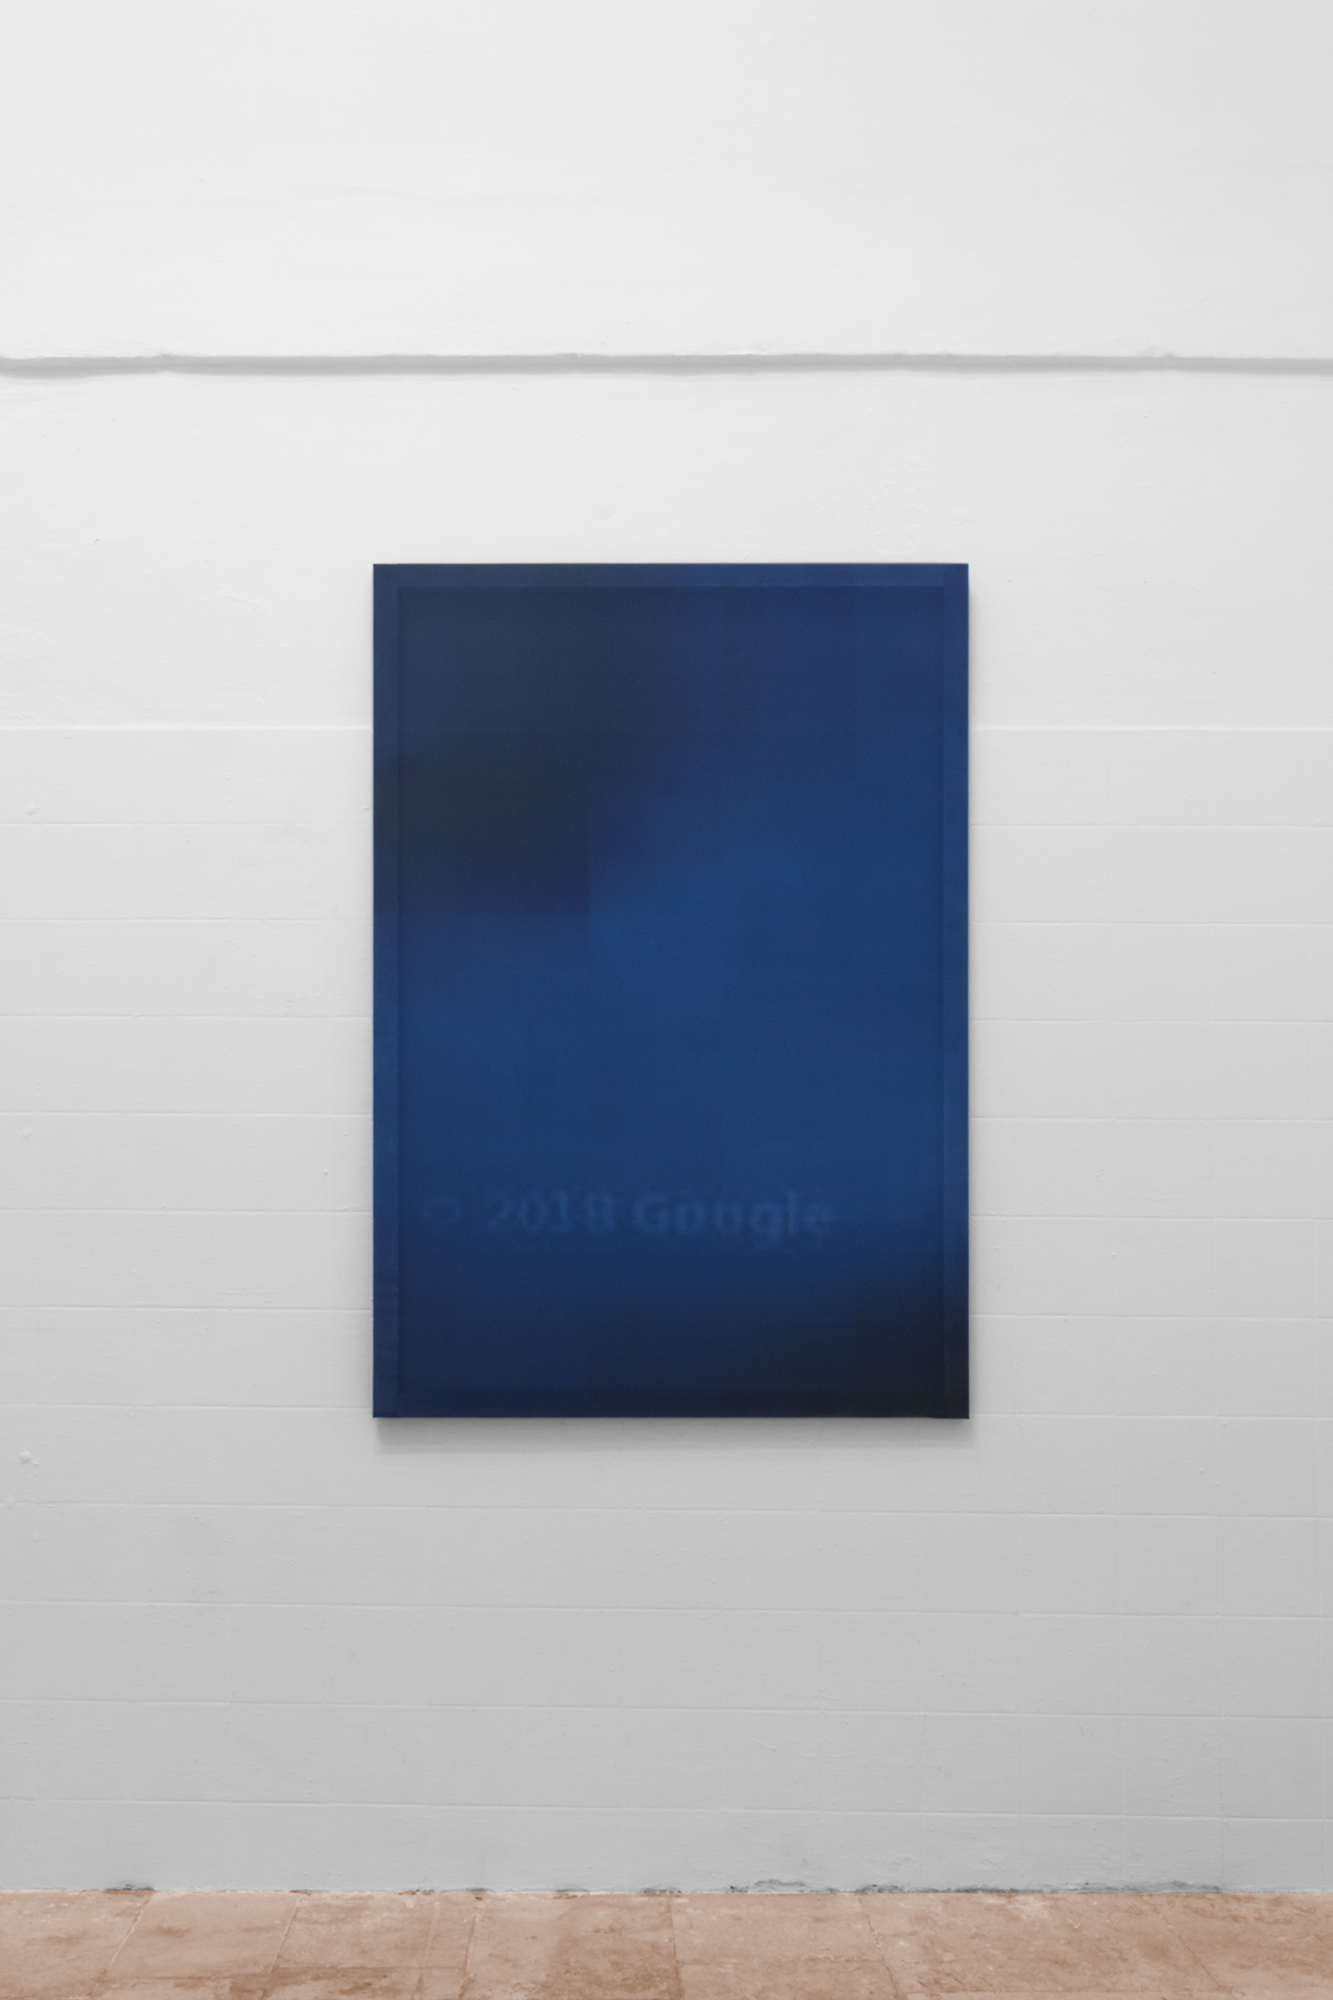 Maurizio Viceré, kh-(41) Light blue, Stampa a inchiostro con sublimazione calandrata su tessuto nautico antivento, telaio. 2018